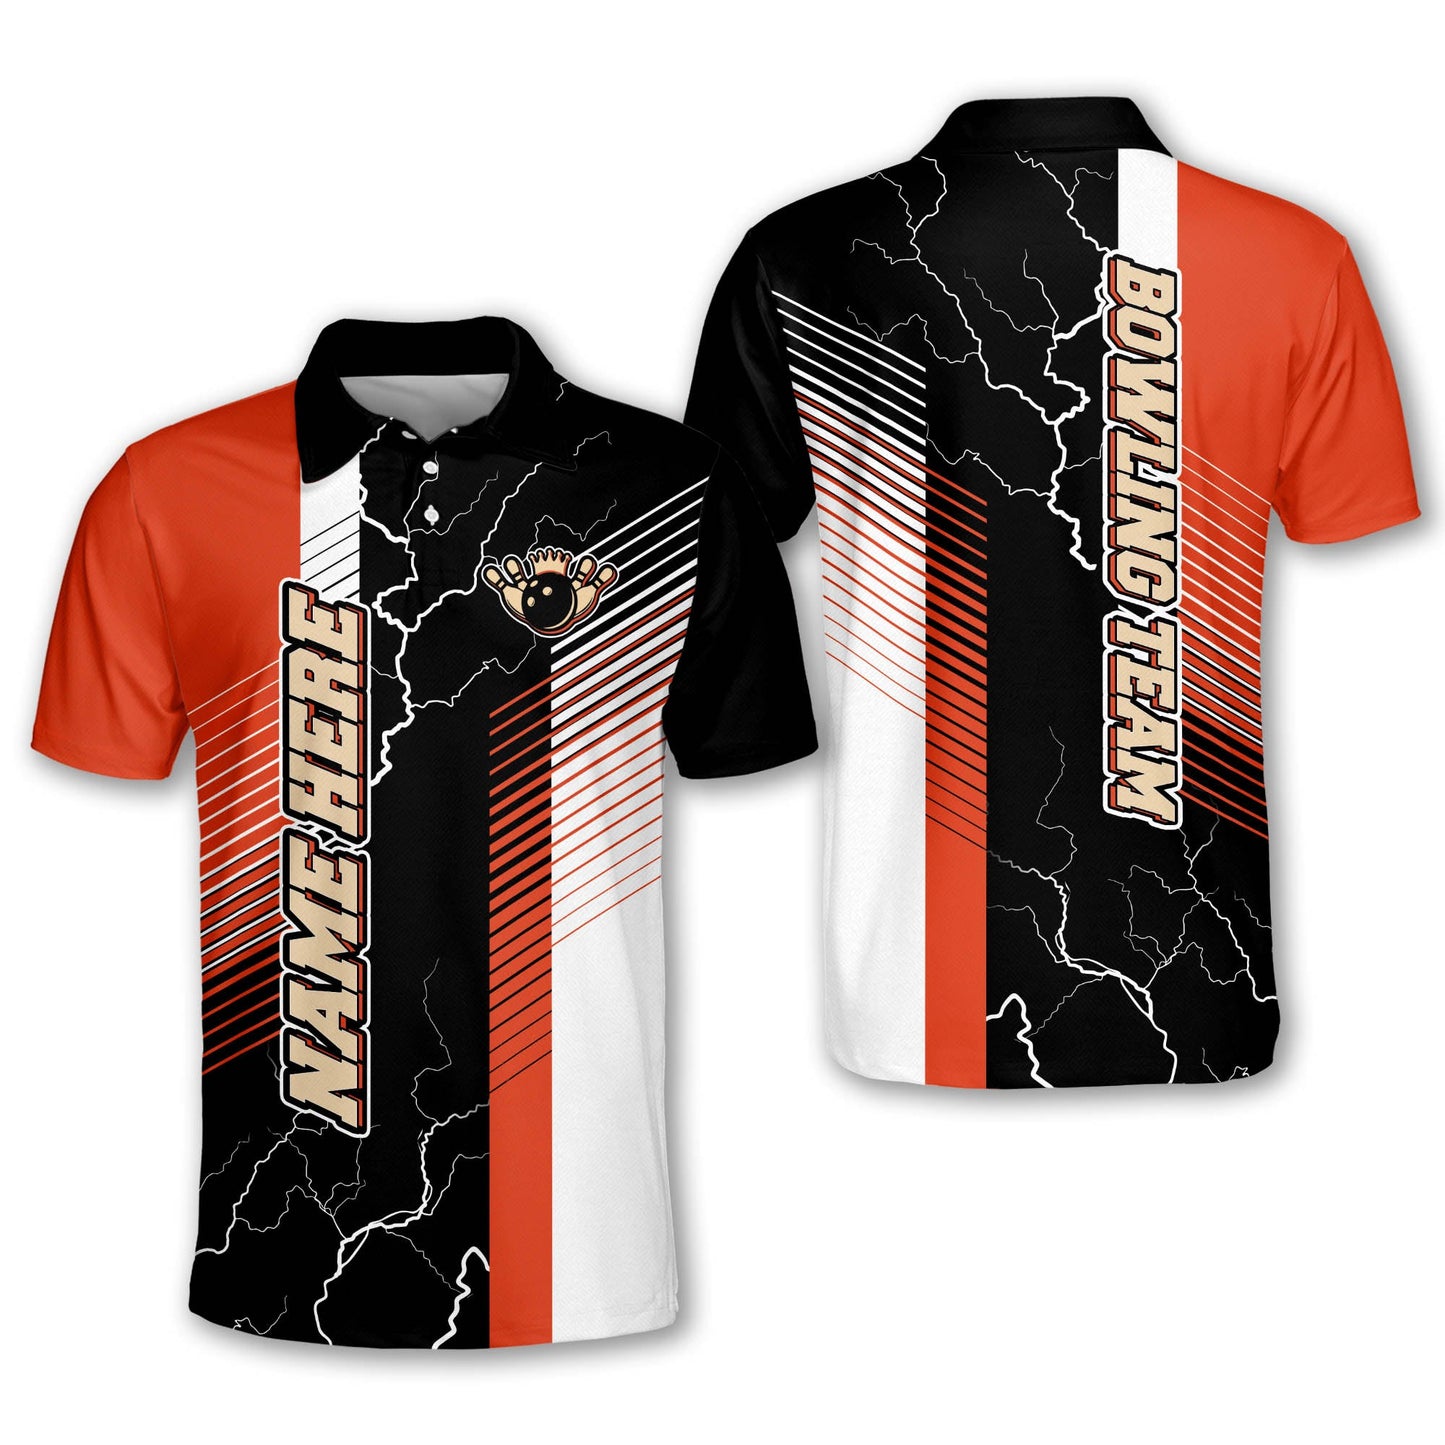 Custom Bowling Shirts For Men - Custom Bowling Shirts Retro - Mens Personalized Bowling Team Shirts - Short Sleeve Bowling Shirts For Men BM0145